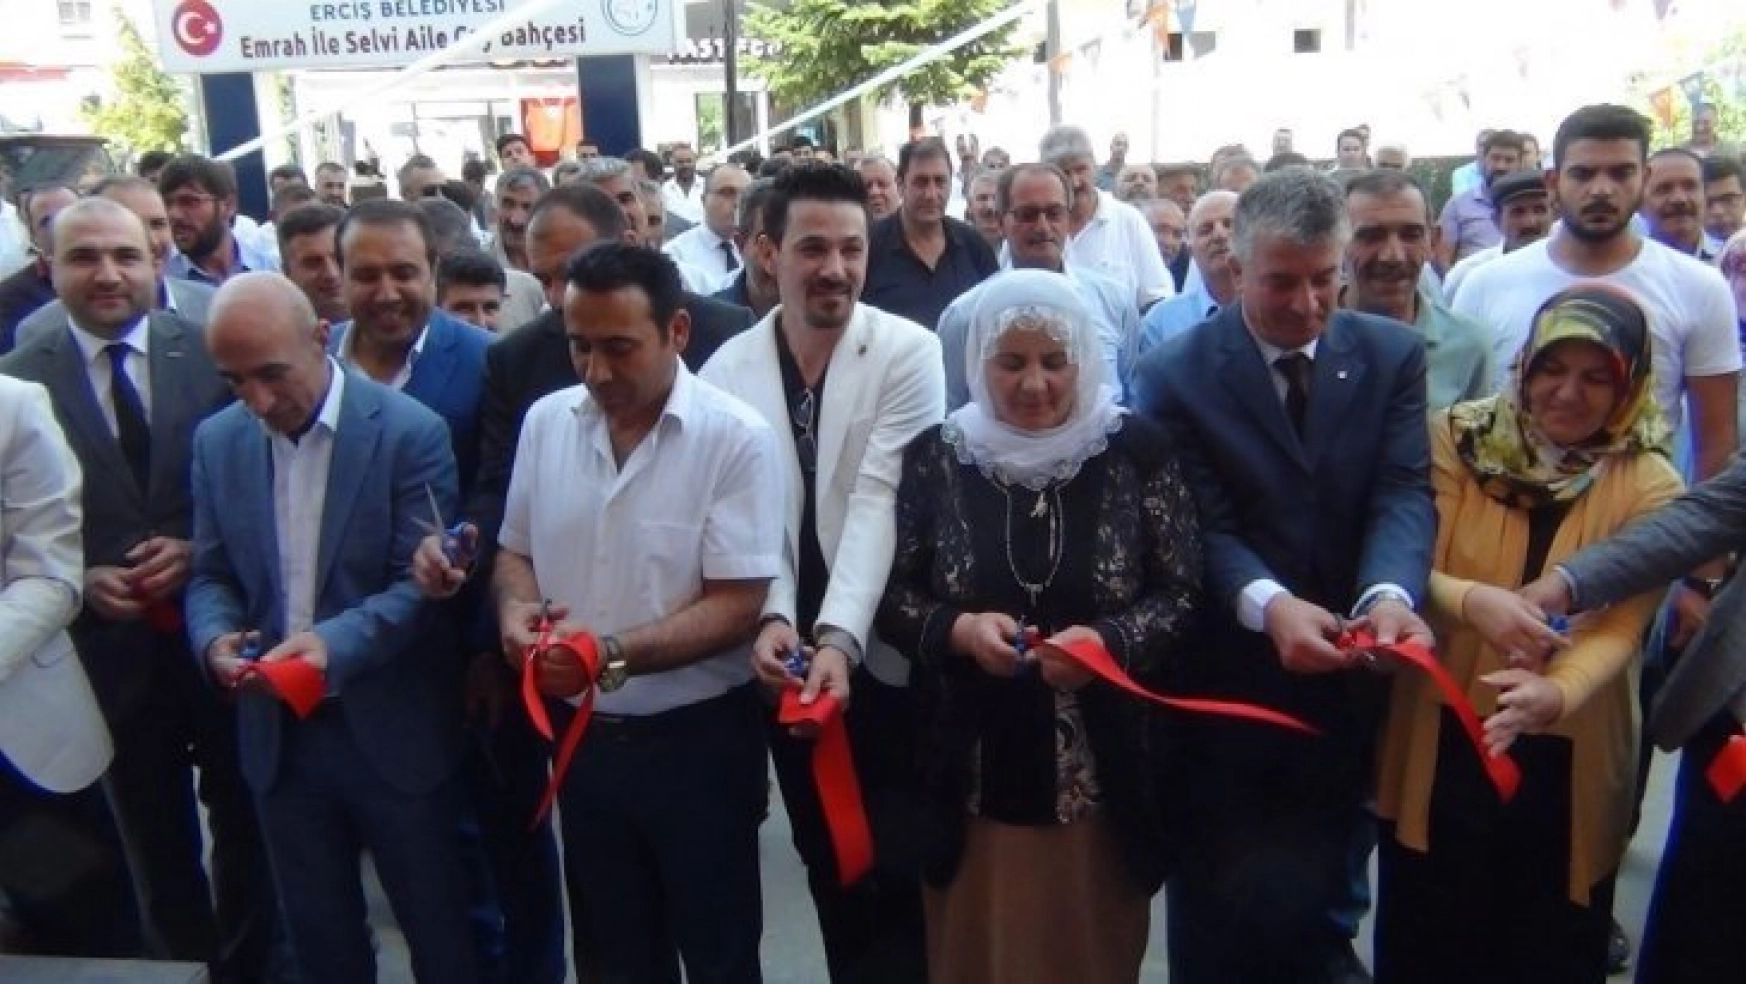 Erciş'te mobilya mağazası açılışı